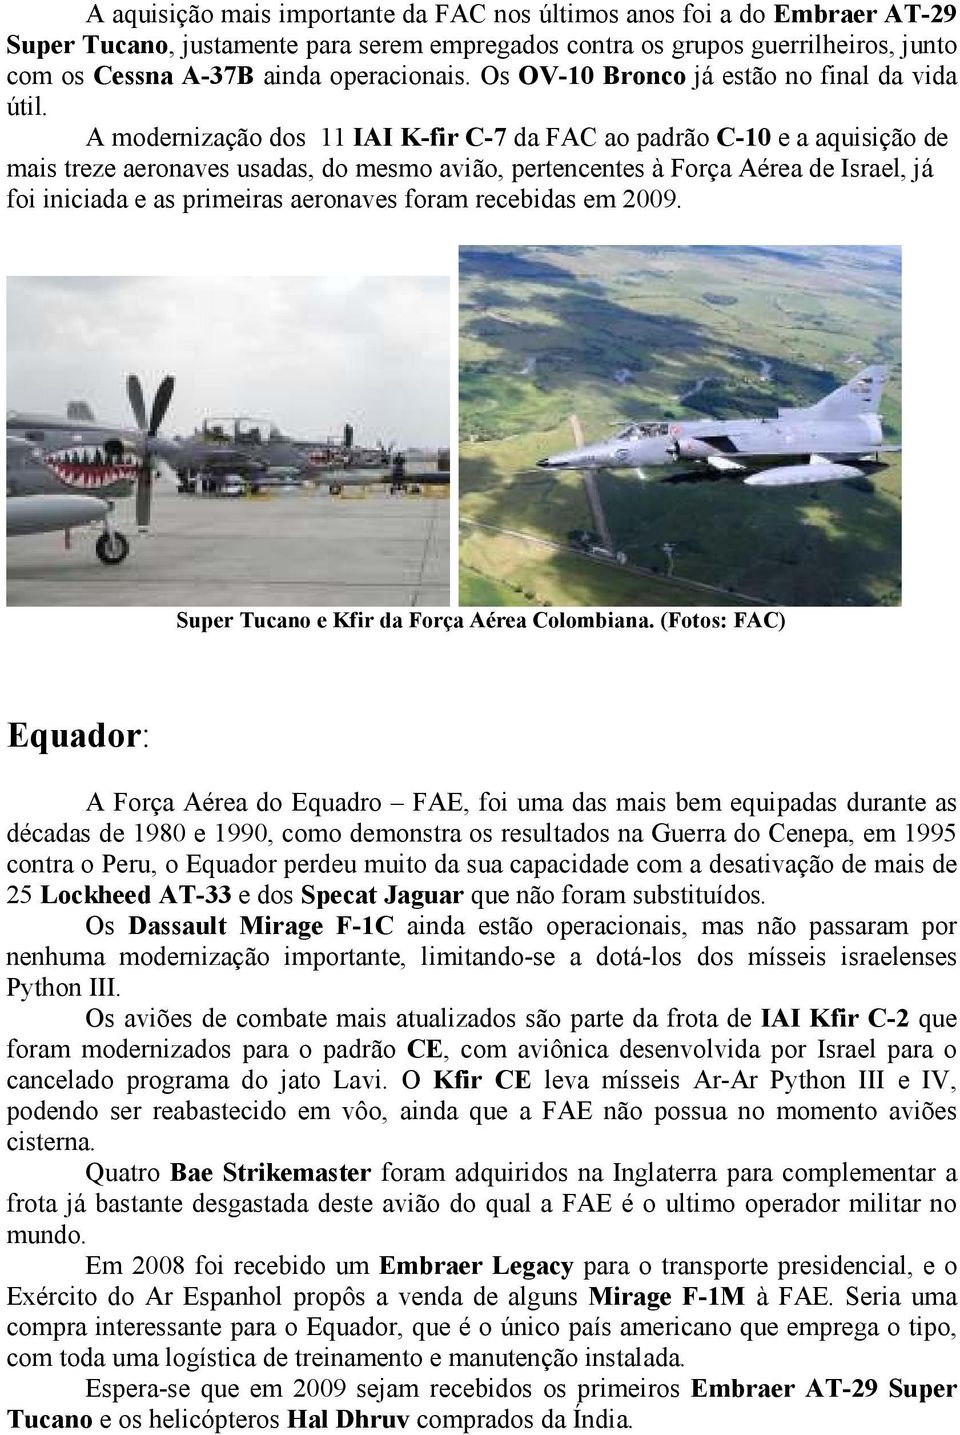 A modernização dos 11 IAI K-fir C-7 da FAC ao padrão C-10 e a aquisição de mais treze aeronaves usadas, do mesmo avião, pertencentes à Força Aérea de Israel, já foi iniciada e as primeiras aeronaves